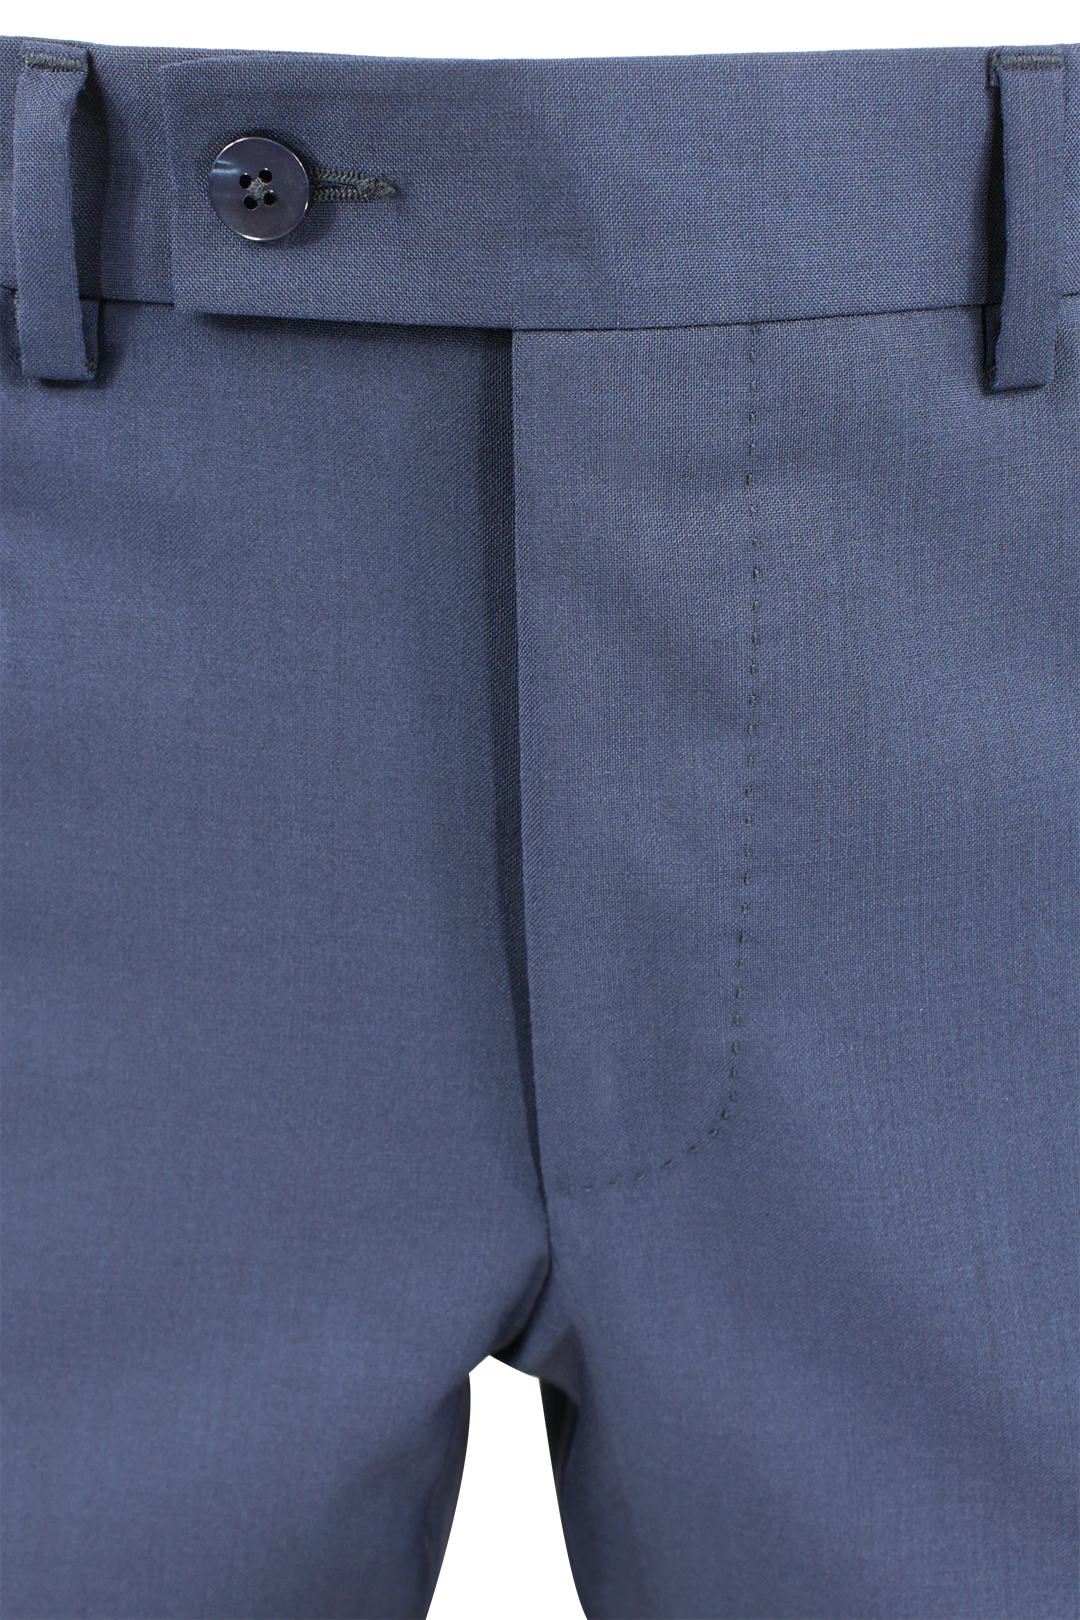 Pantalone in tela di lana vergine bluette bottone